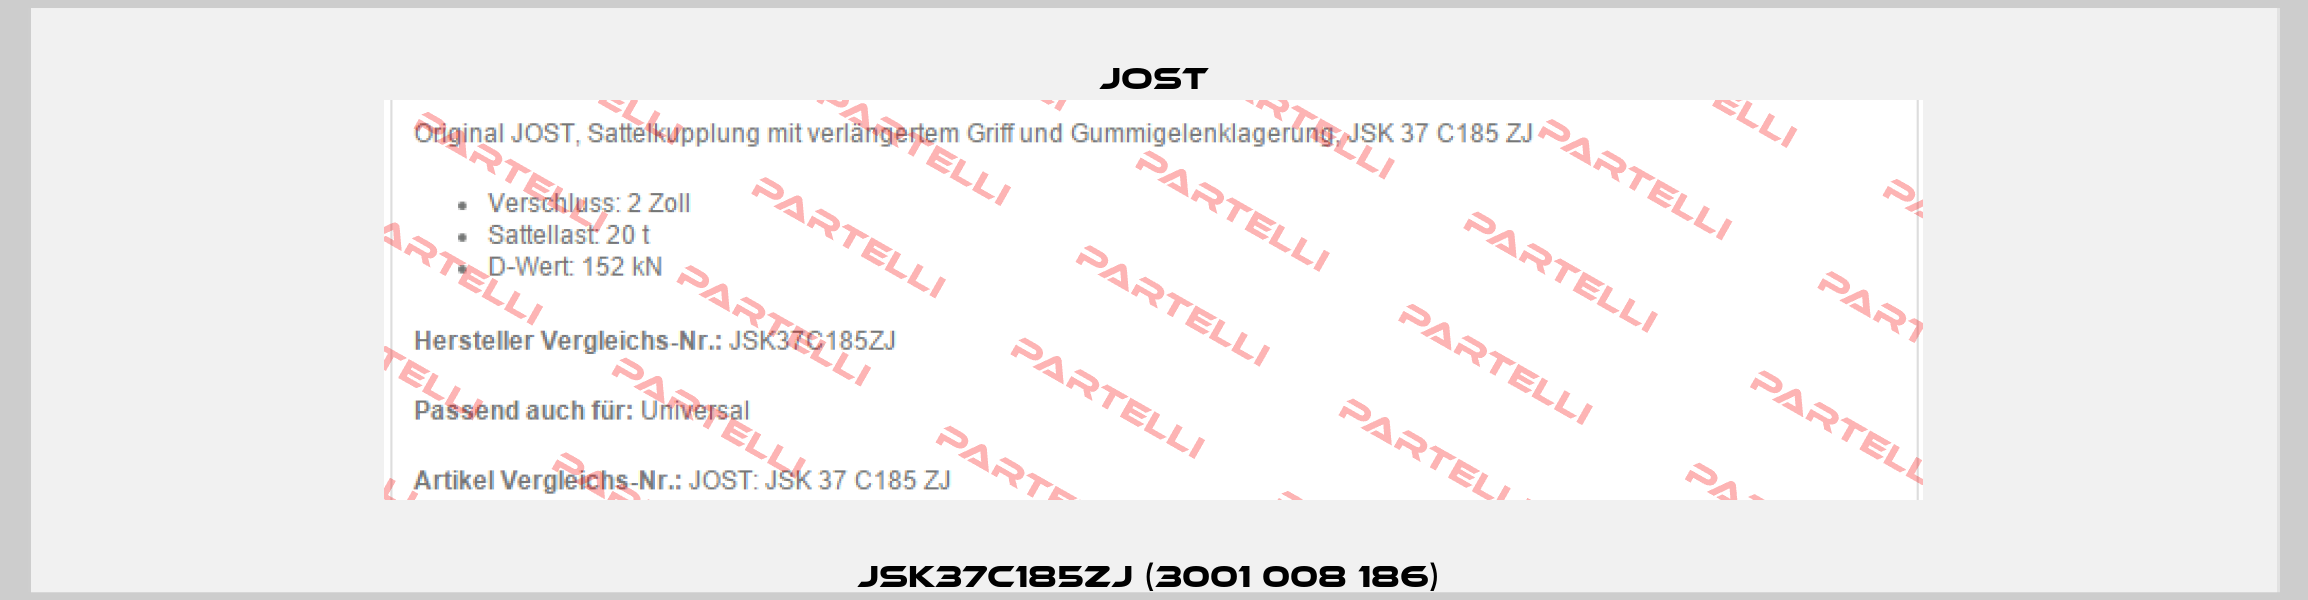 JSK37C185ZJ (3001 008 186)  Jost